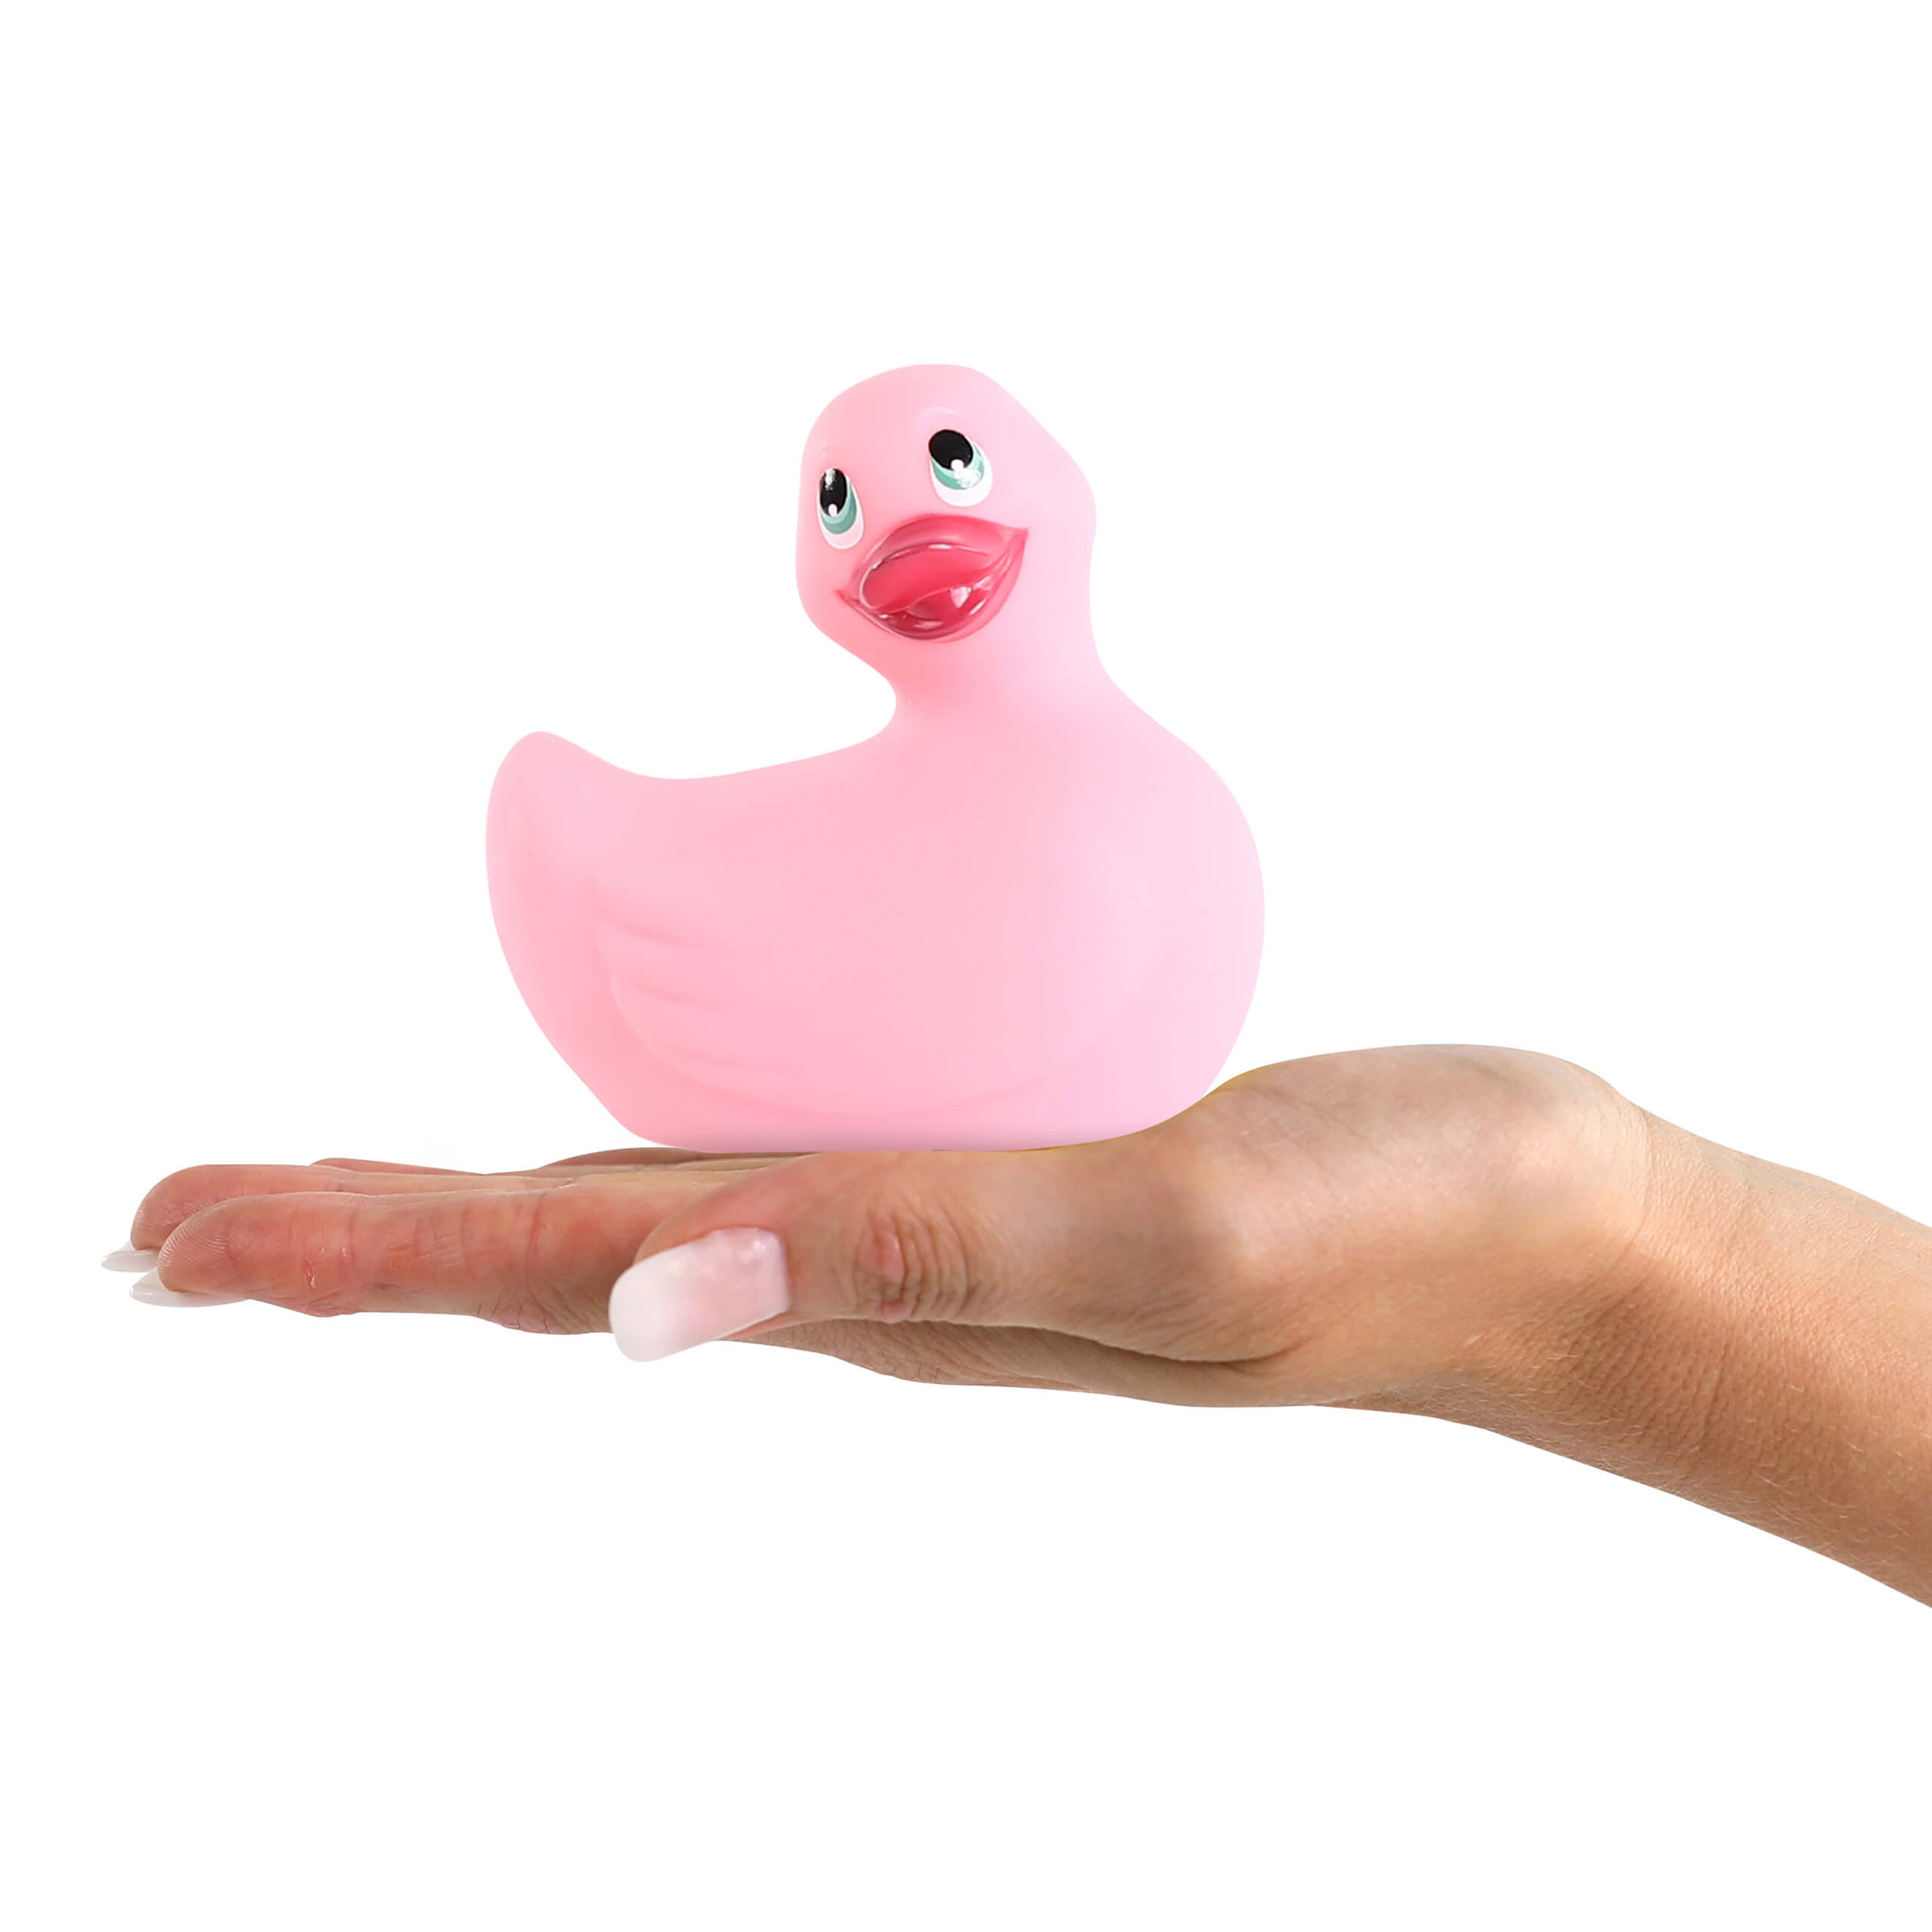 Vibrační kachnička Big Teaze Toys - I Rub My Duckie 2.0 Pink